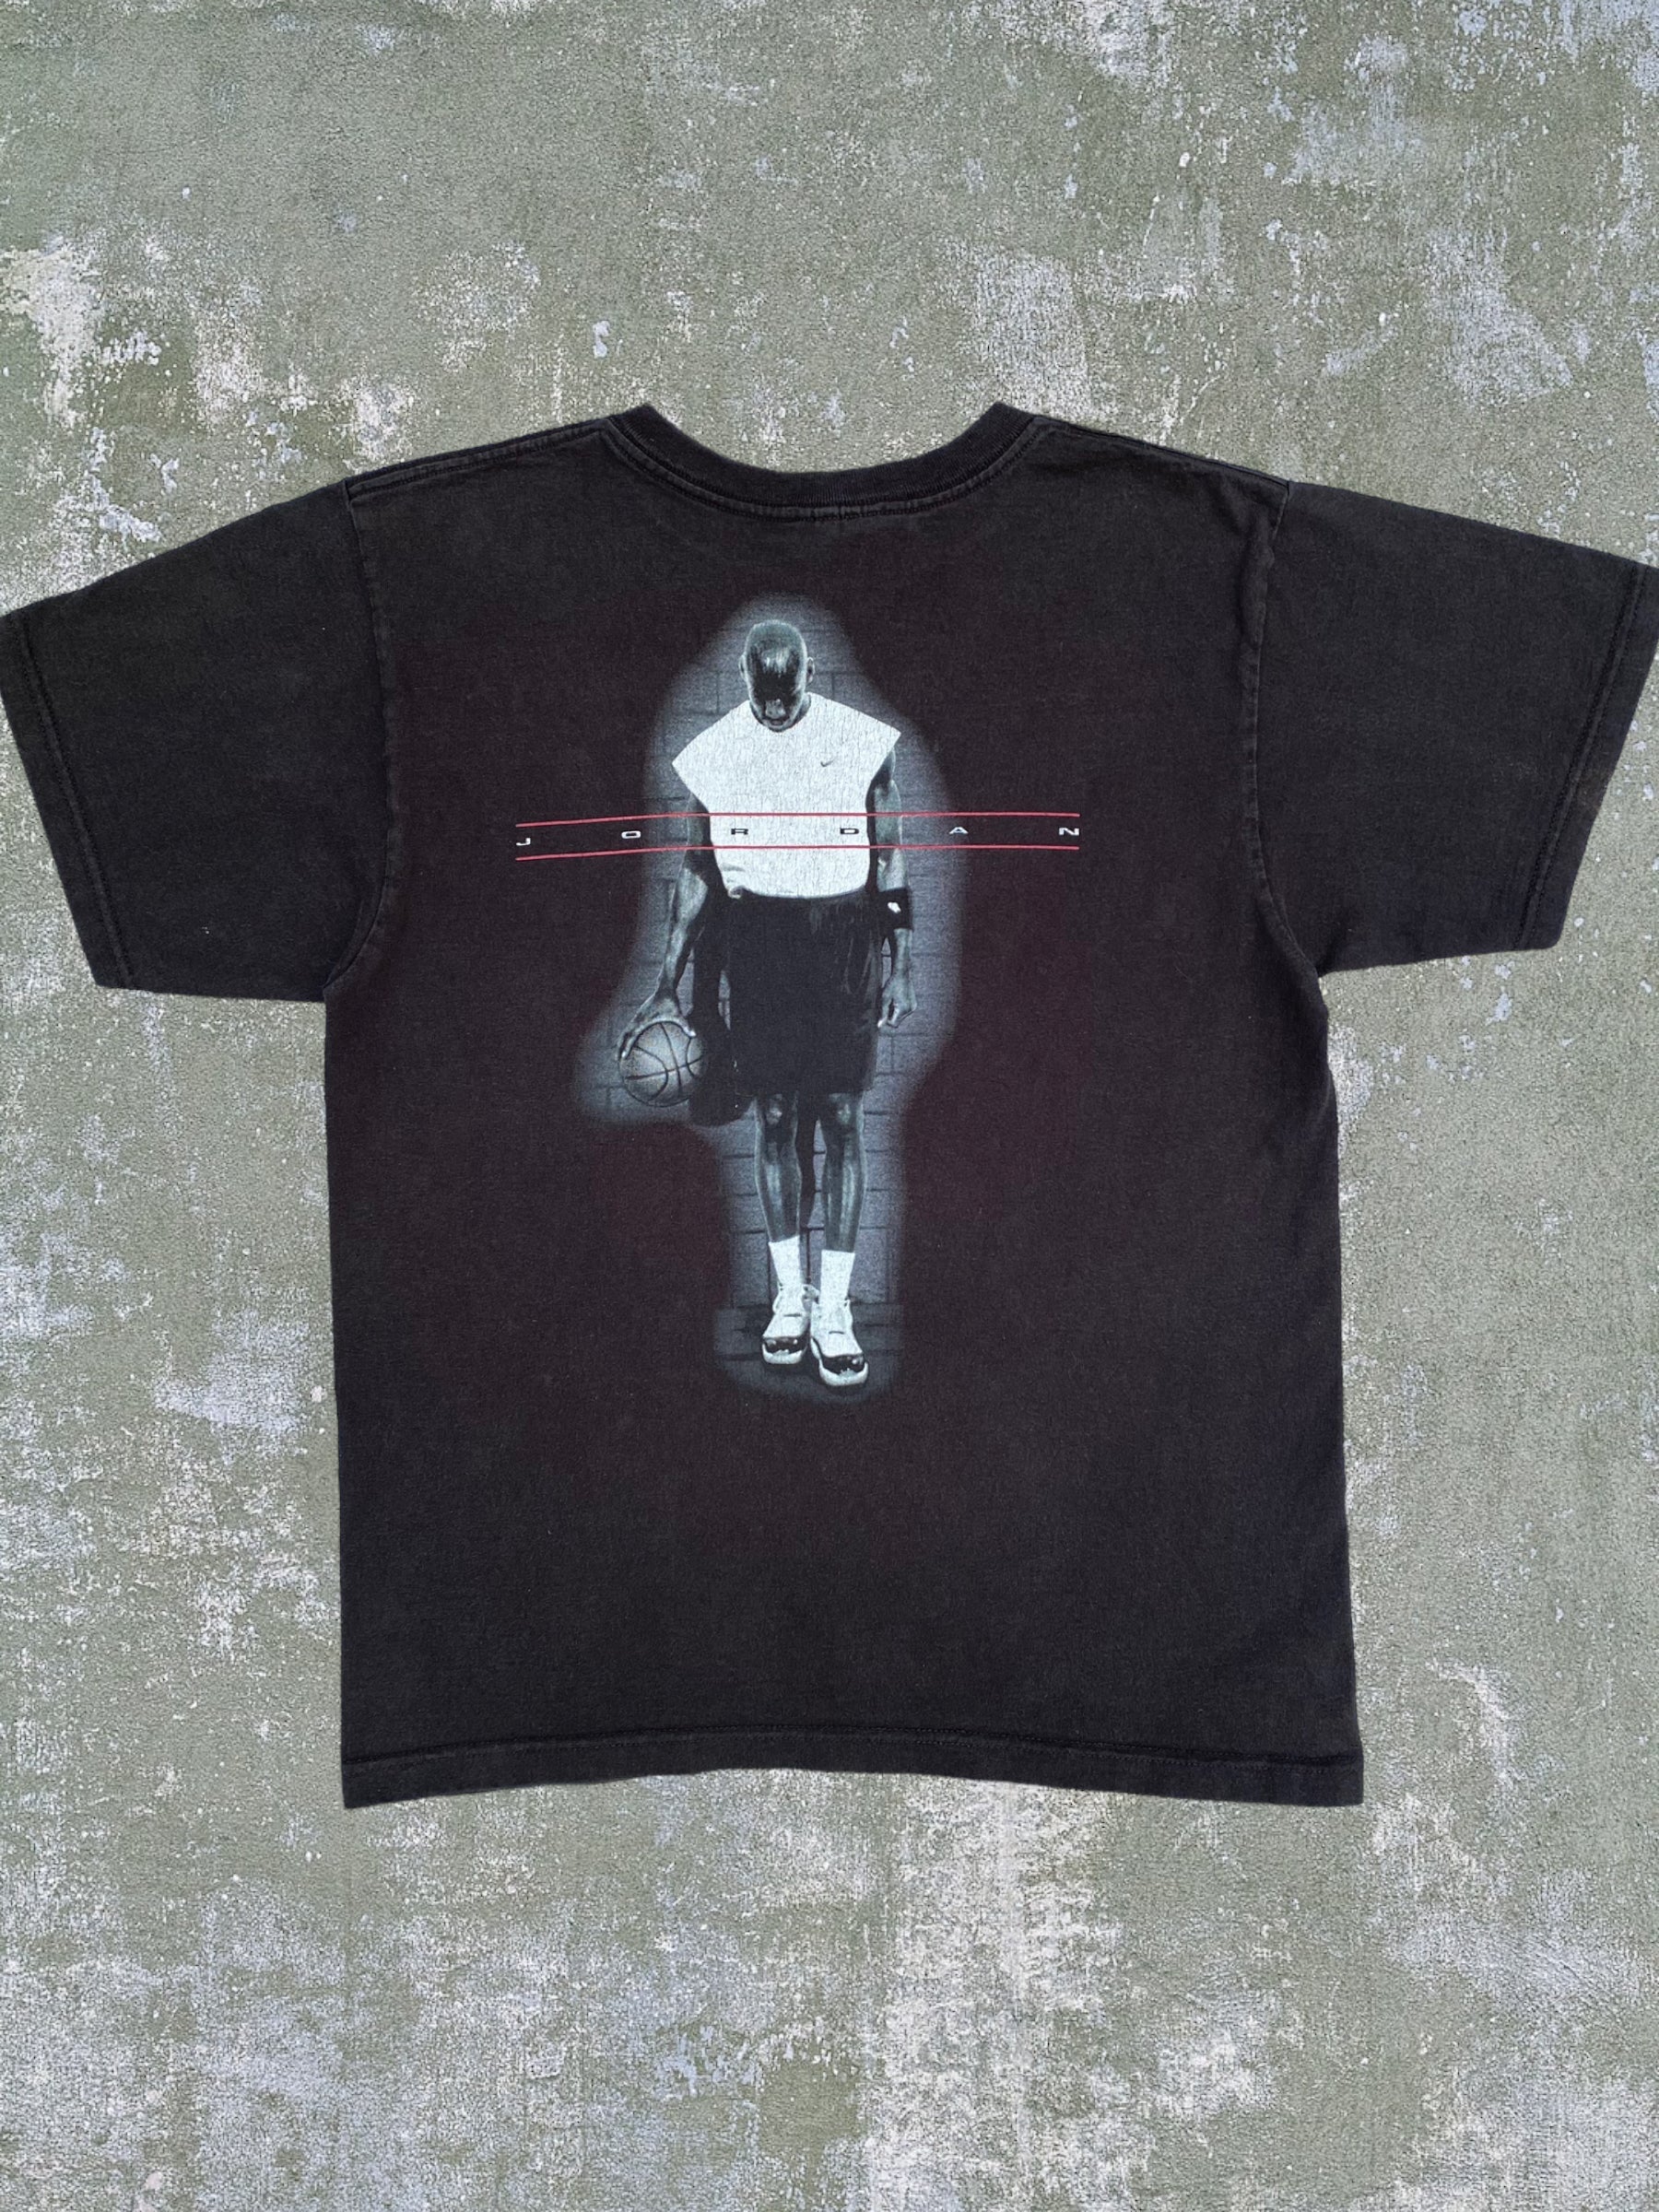 永久保証90s NIKE AIR JORDAN S/S Tee Black 90年代 ナイキ エア ジョーダン 半袖Tシャツ Tシャツ ブラック 刺繍ロゴ ジャンプマン G1056 Mサイズ